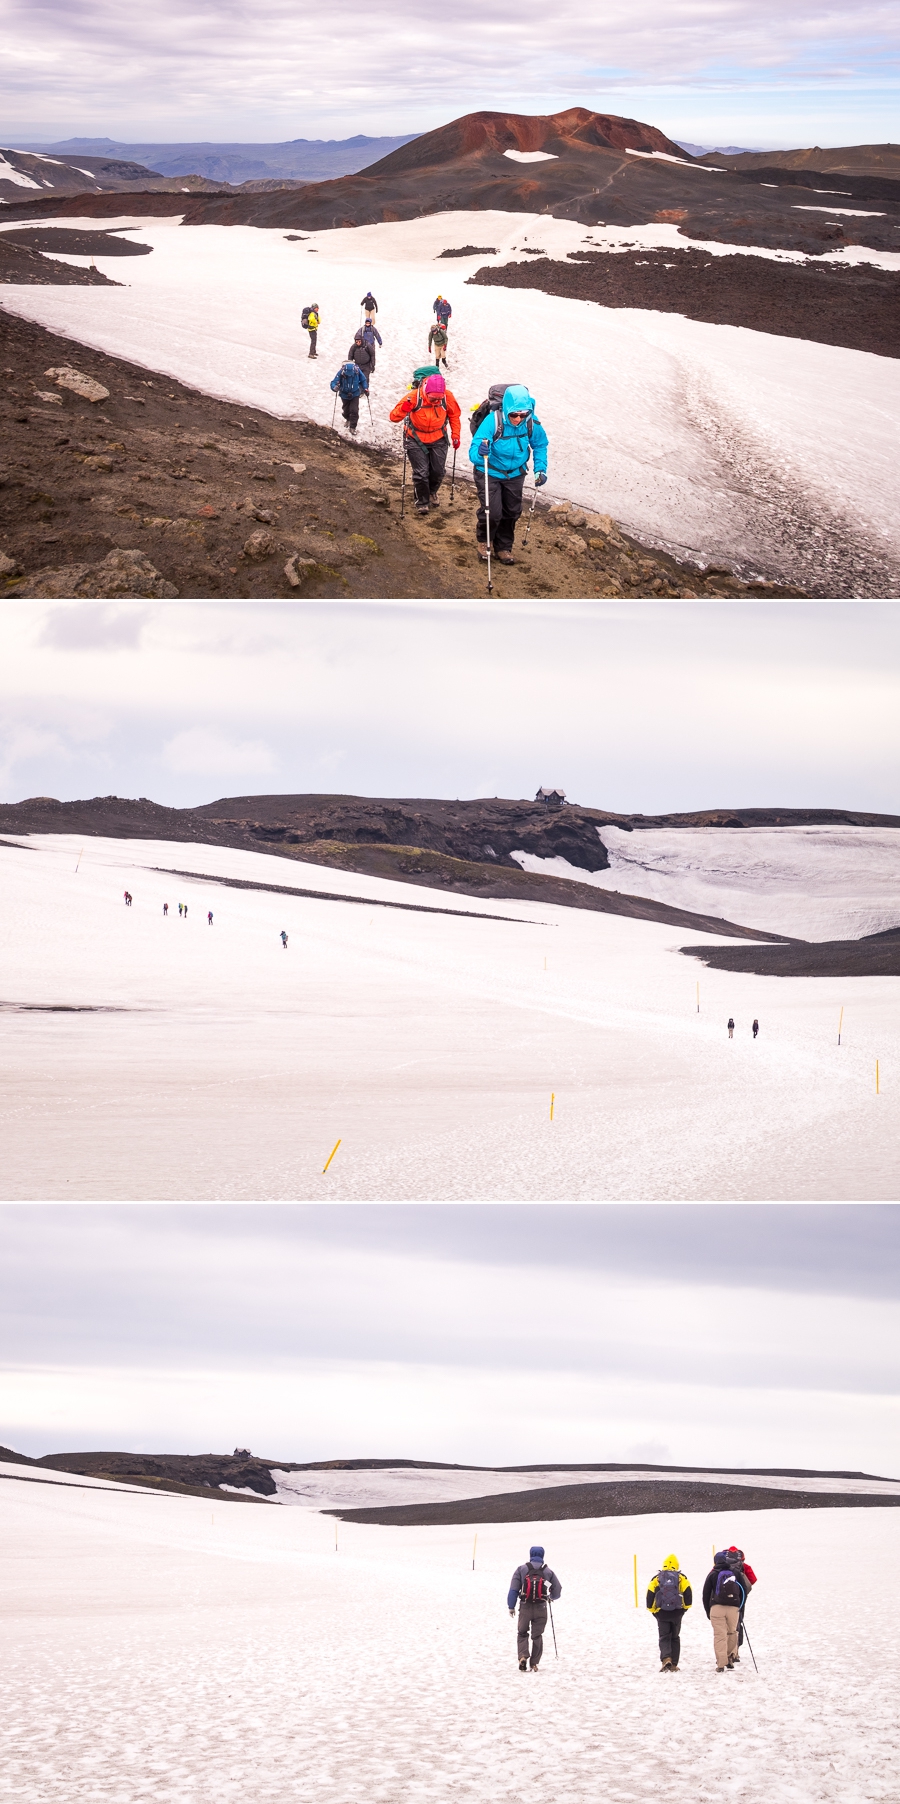 Hiking through snow on Day 6 - Laugavegur Fimmvörðuháls Trail - Icelandic Highlands